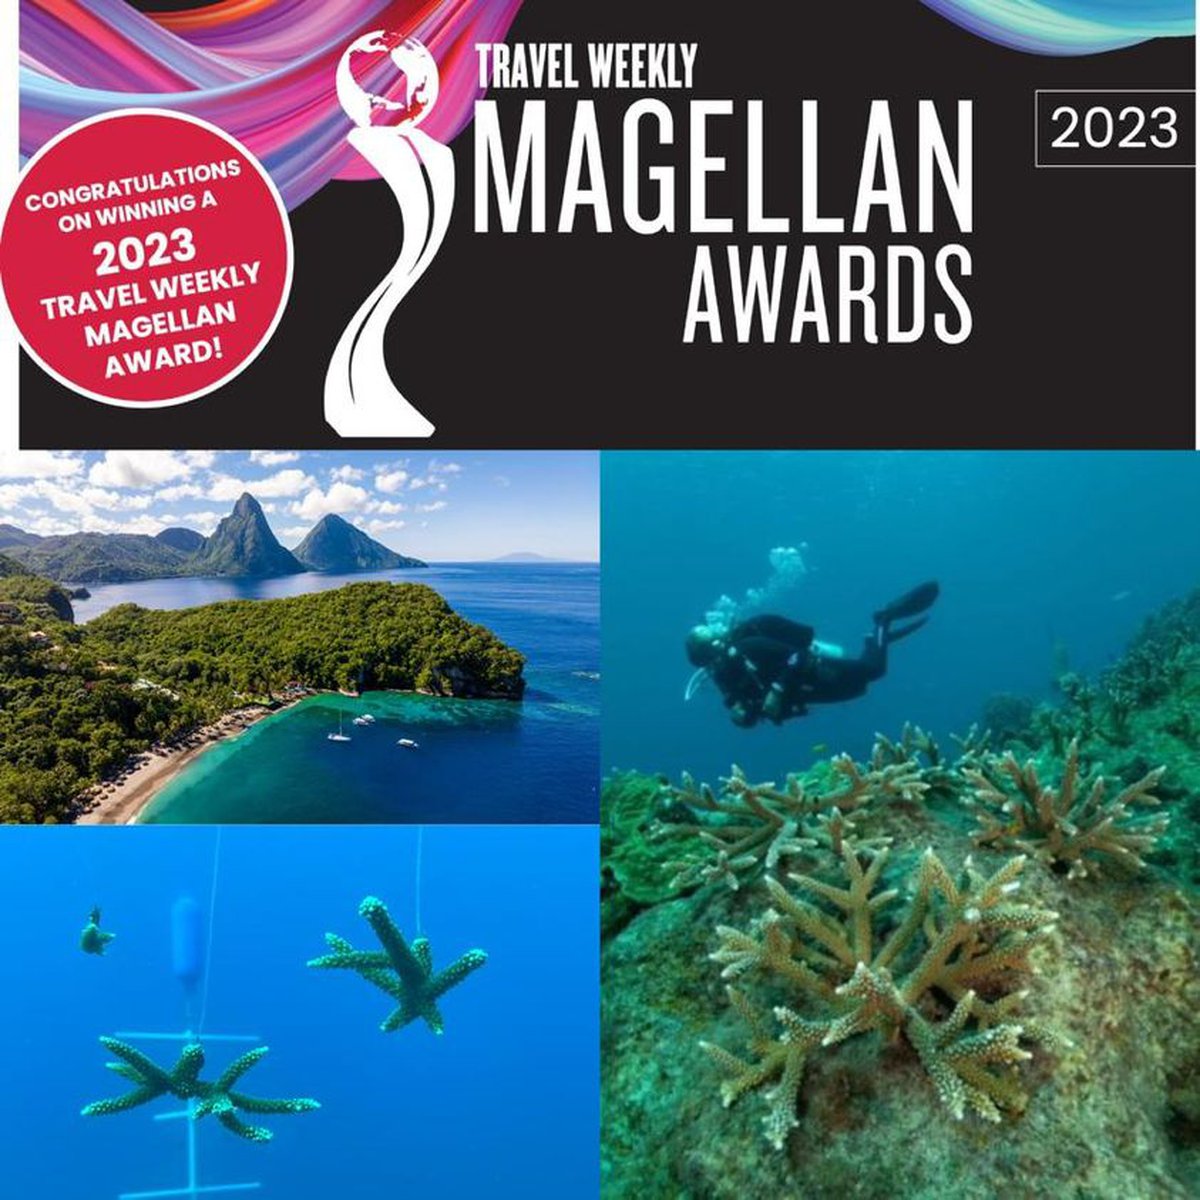 Magellan Awards Image